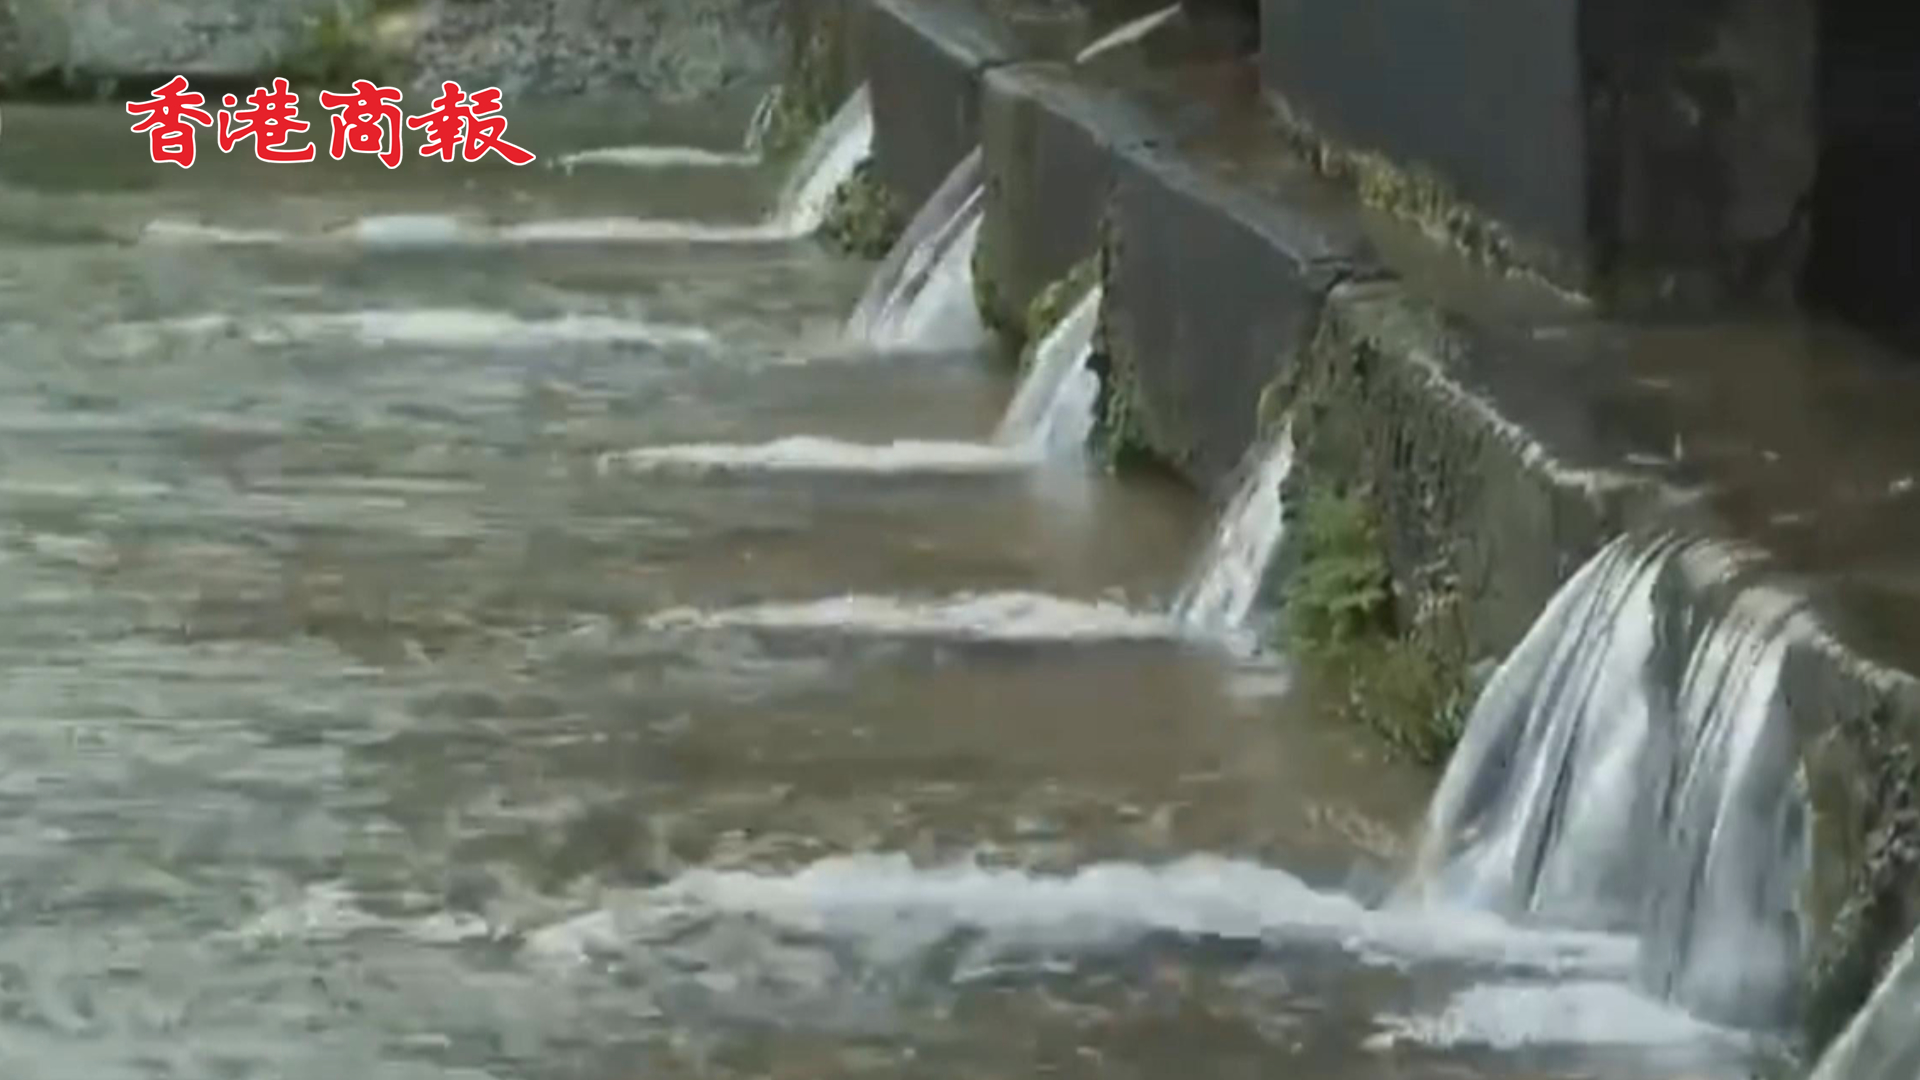 有片 | 多處水體有機氟化物超標 日本沖繩啟動水體土壤調查